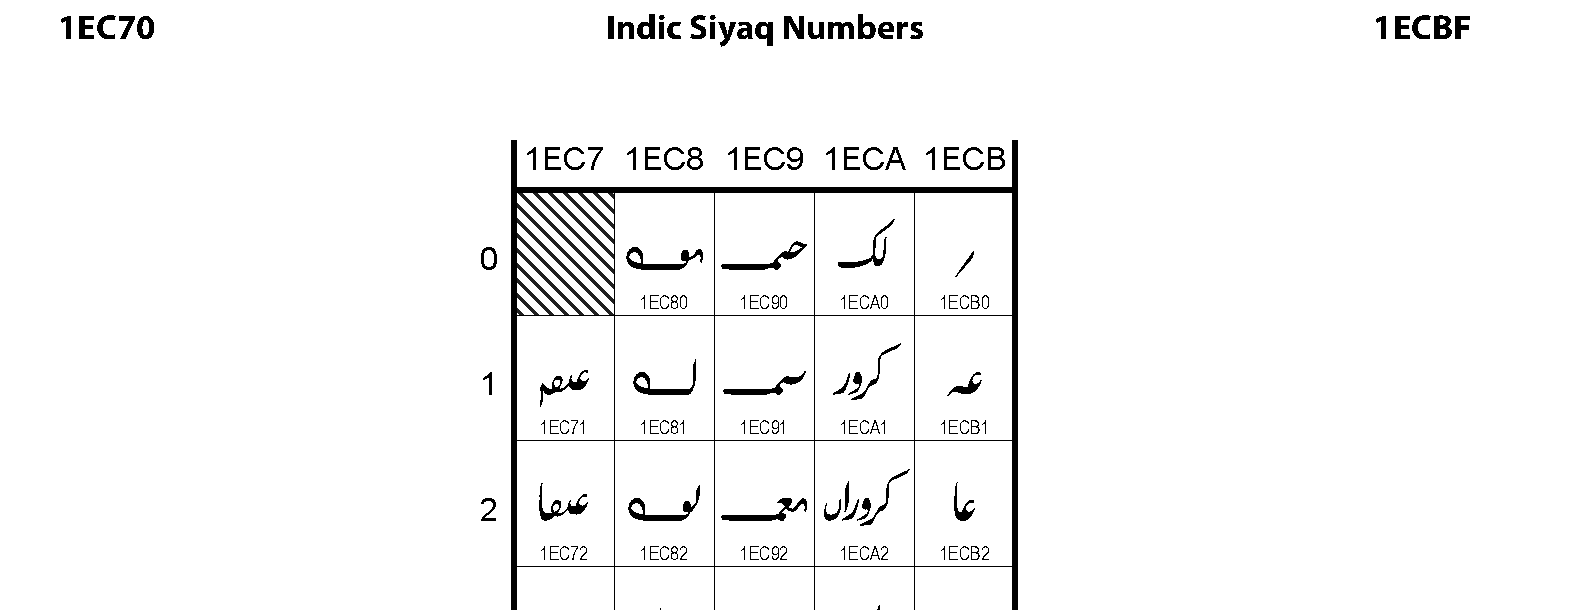 Unicode - Indic Siyaq Numbers